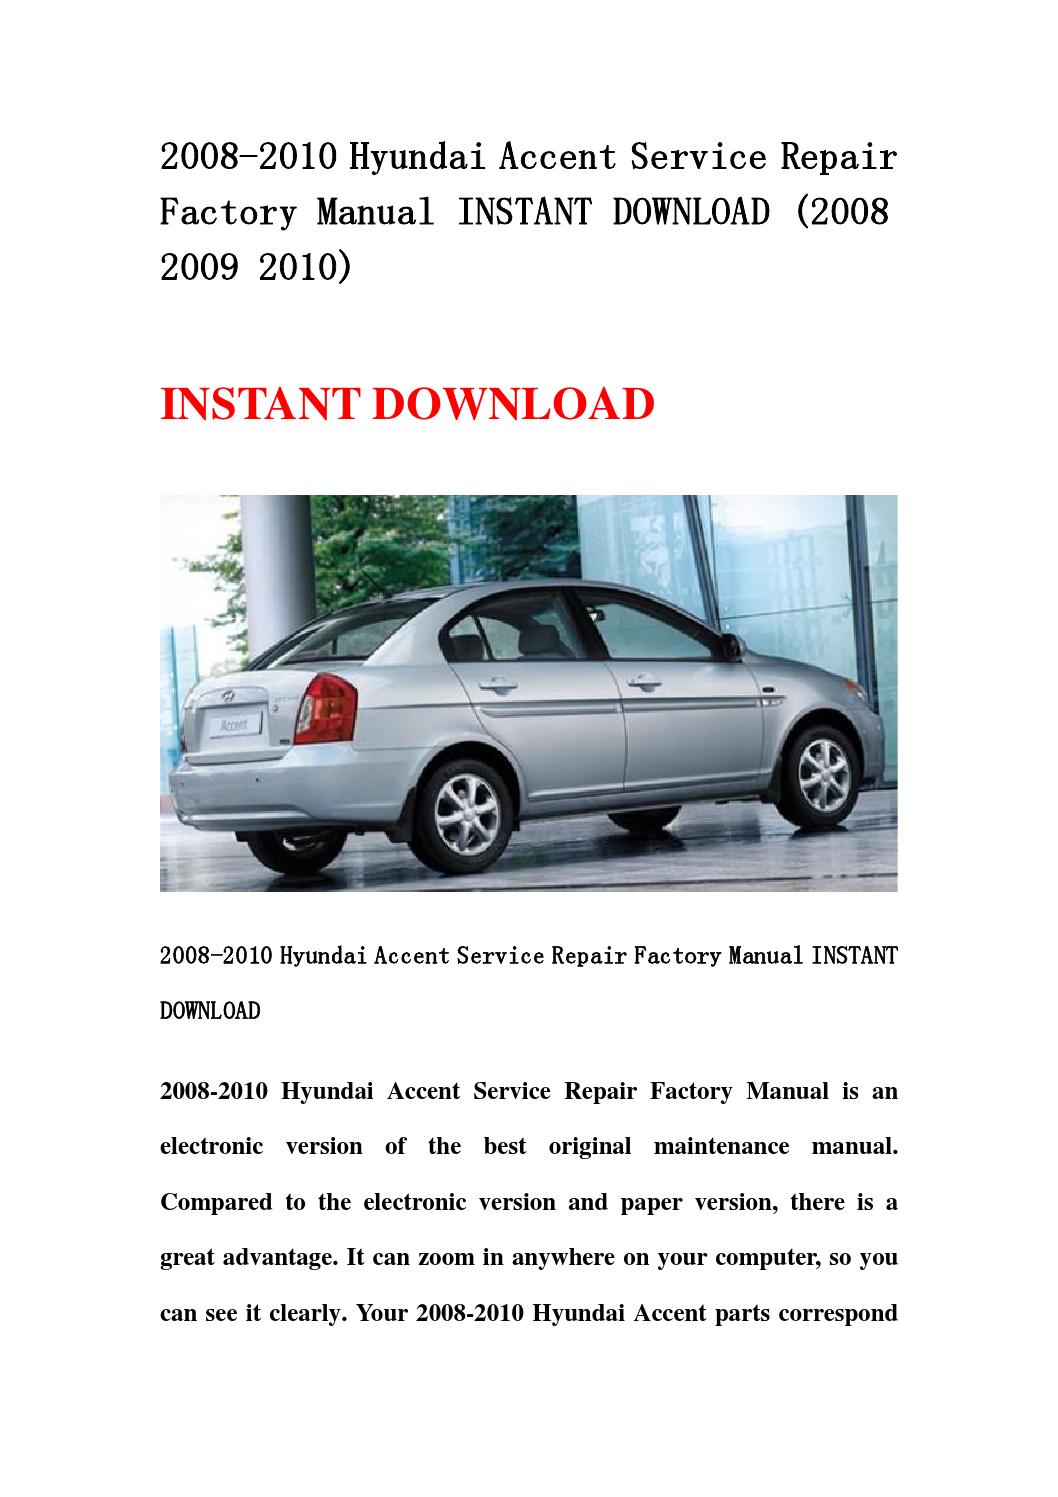 2010 hyundai accent manual download